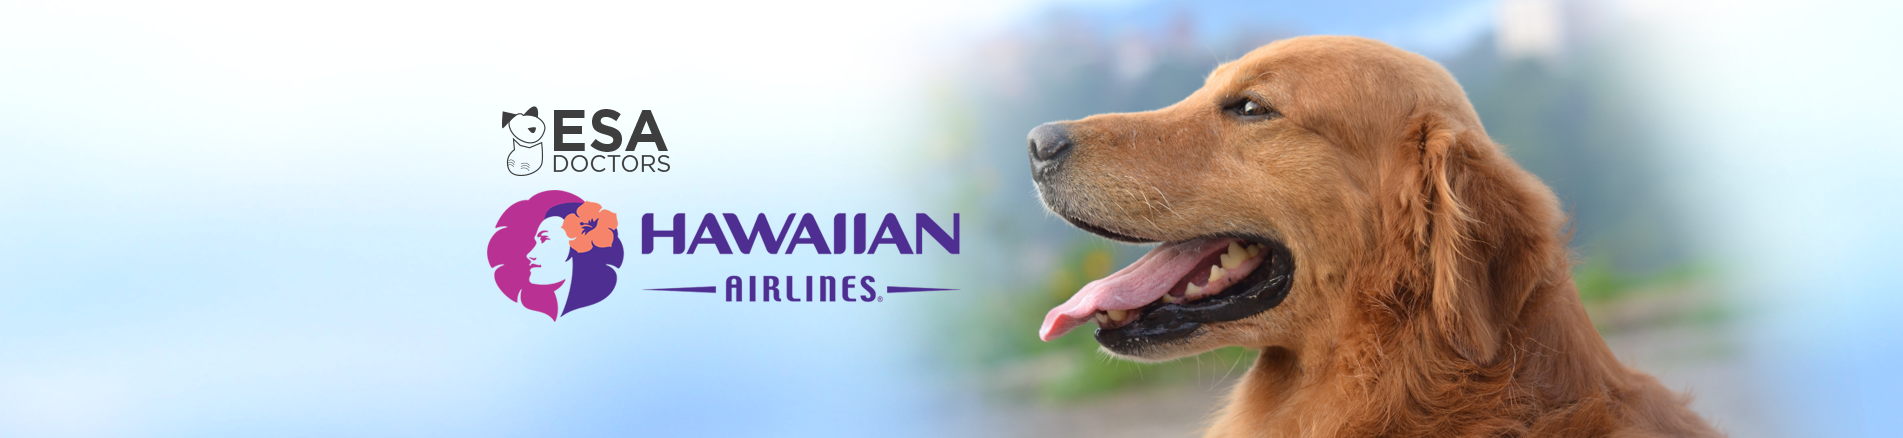 hawaiian airlines esa